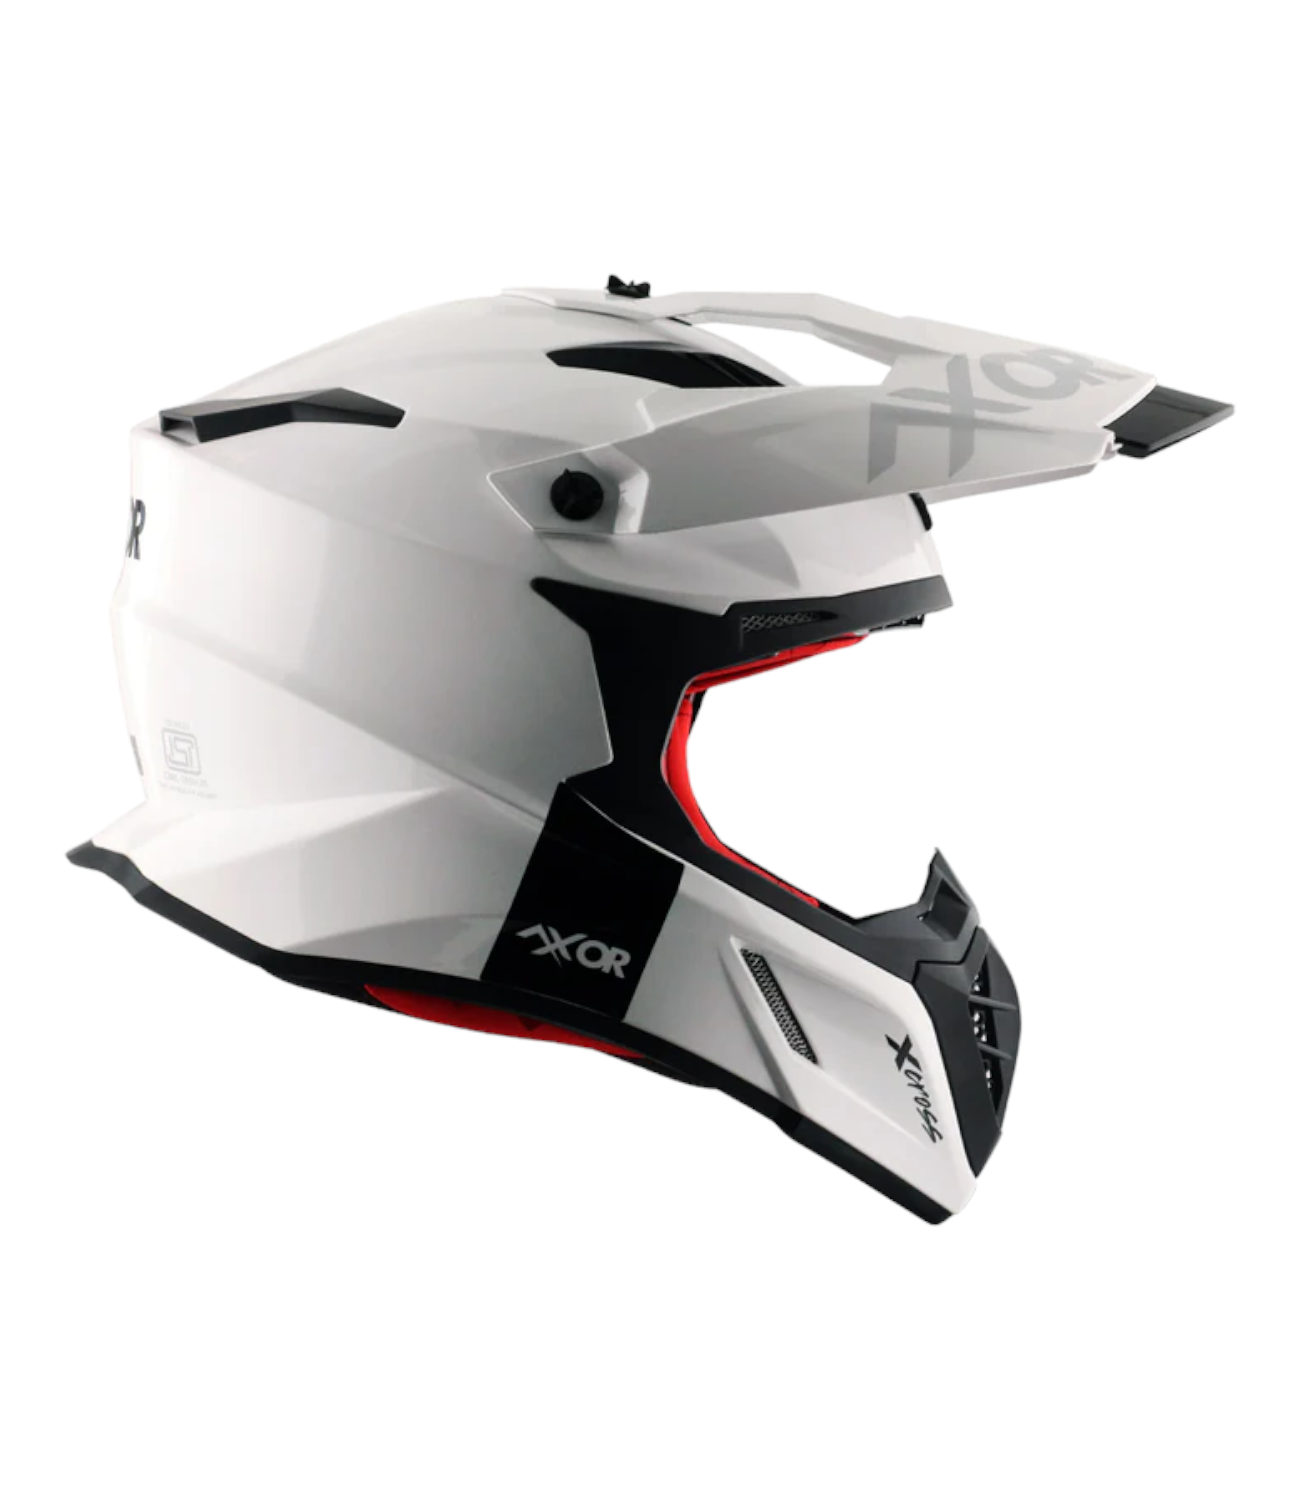 Axor X-Cross Single Color Helmet White